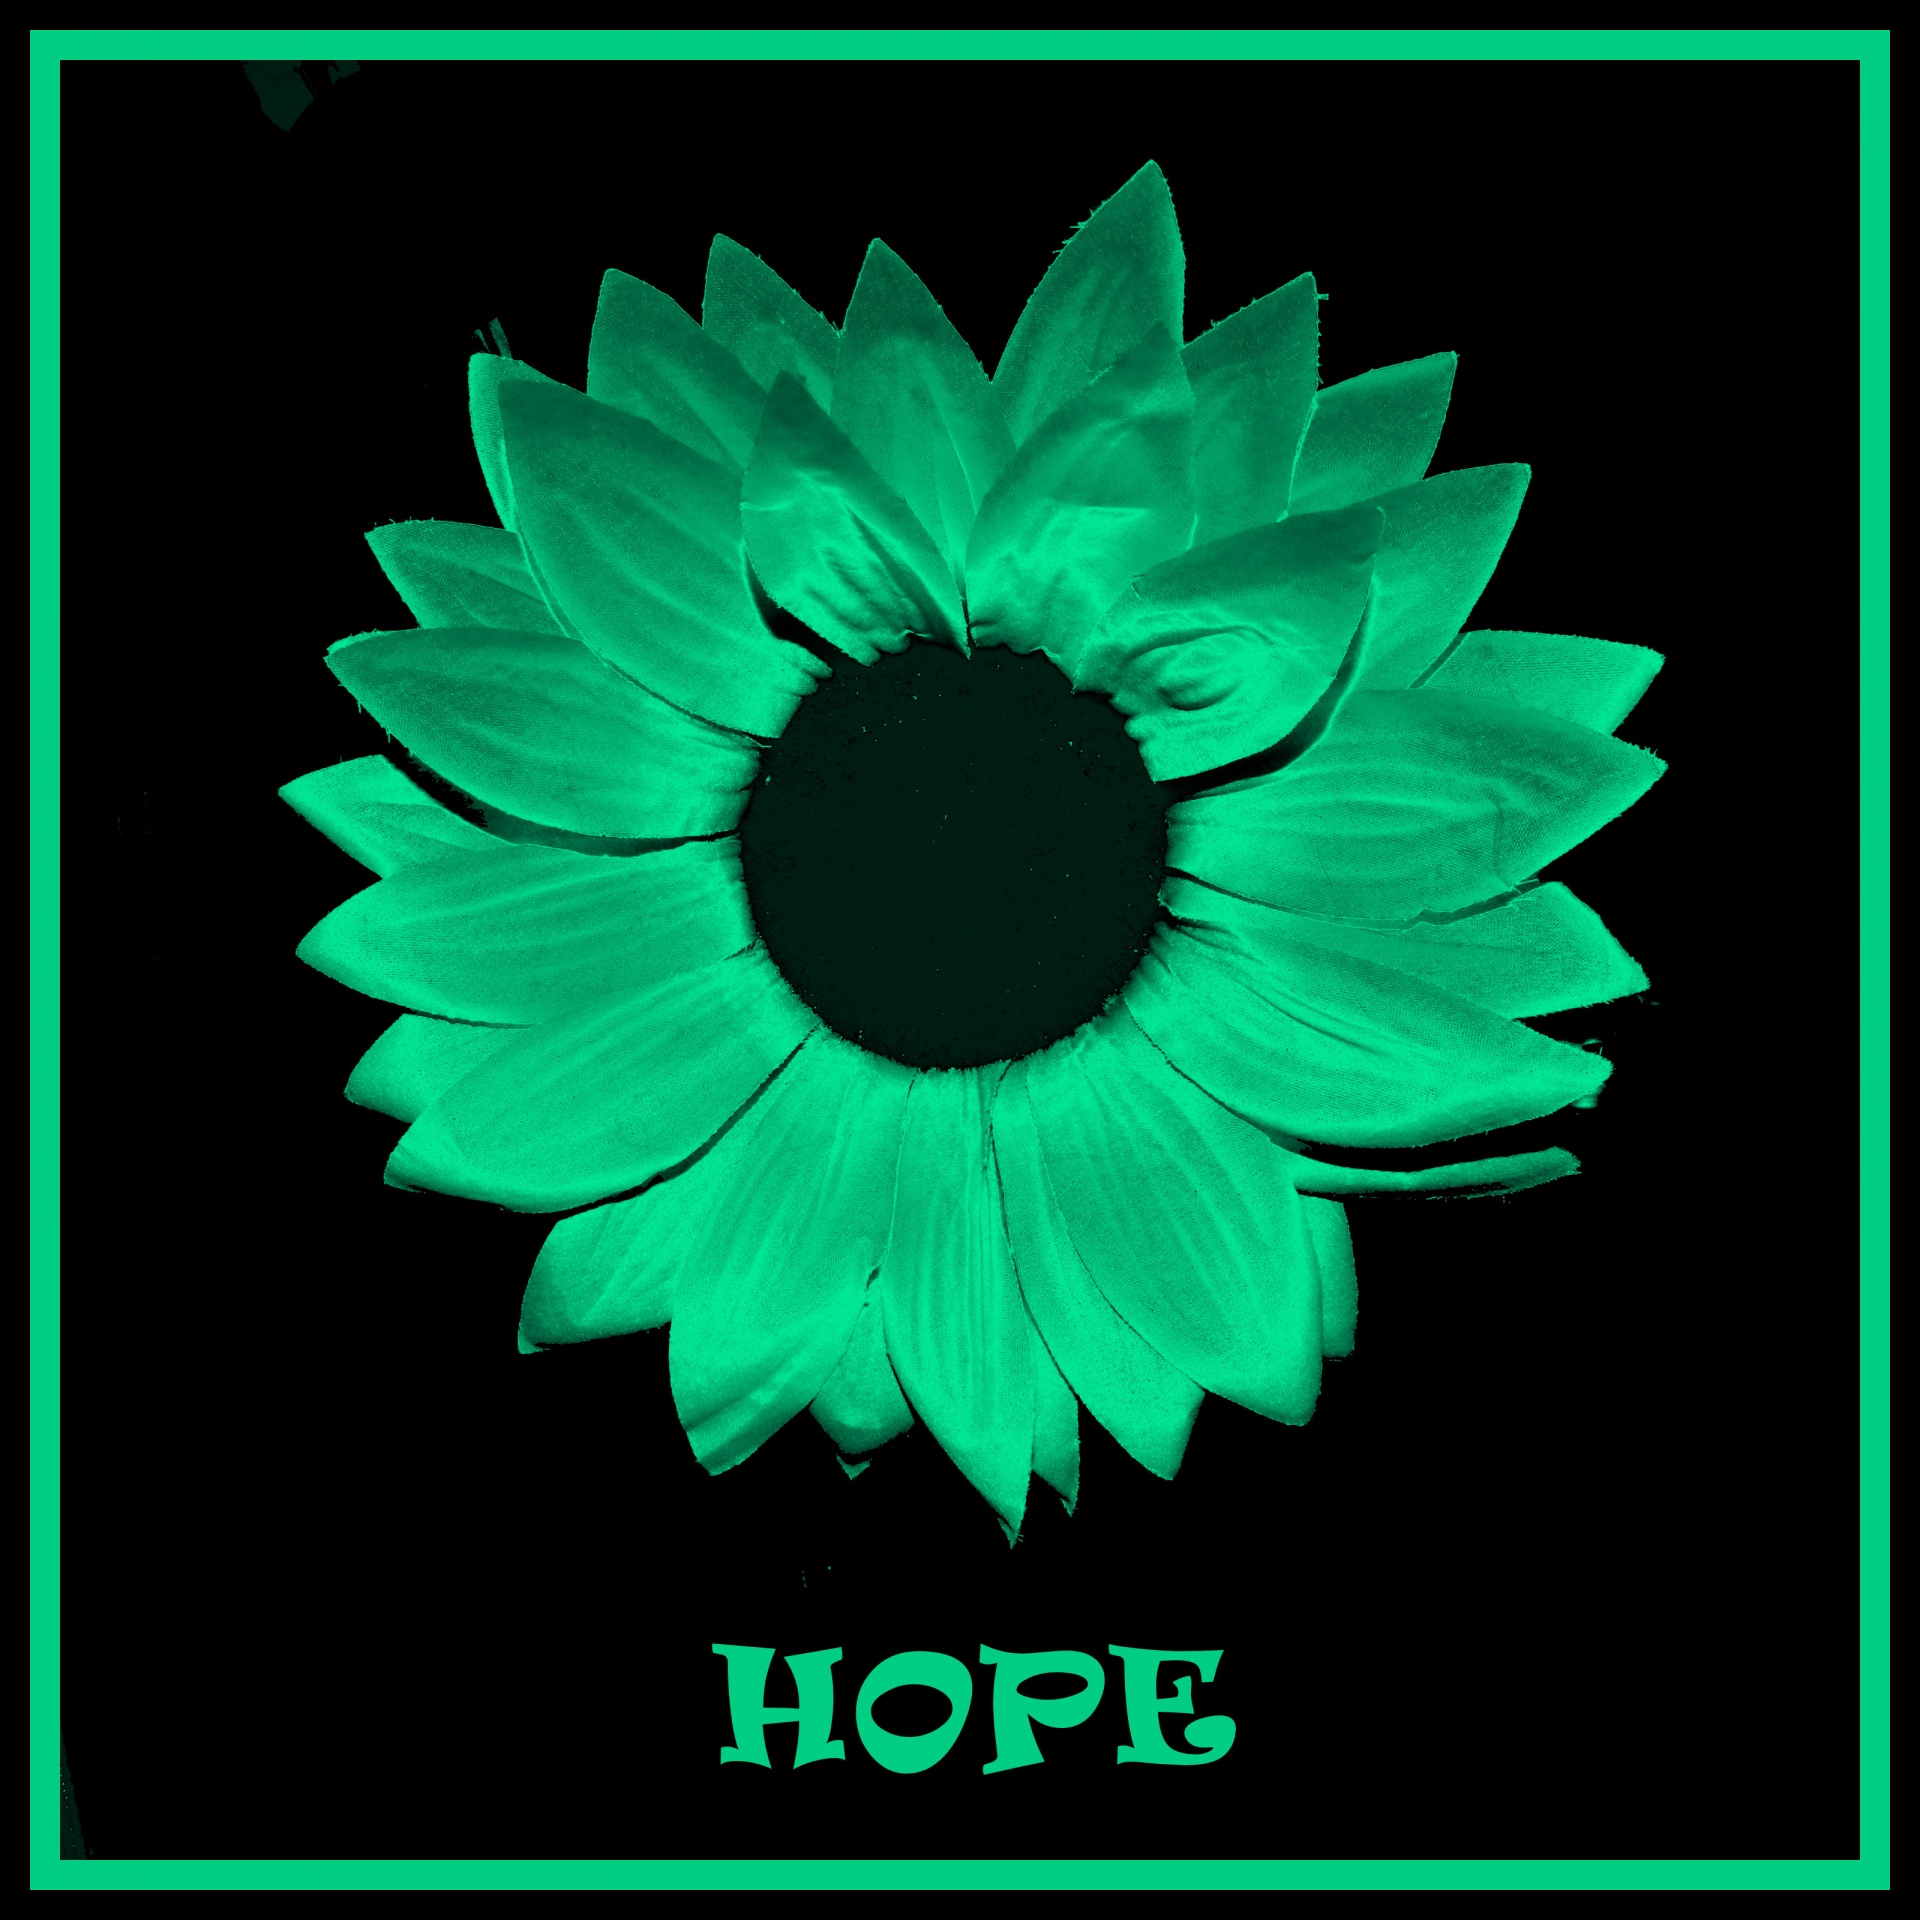 Speranza